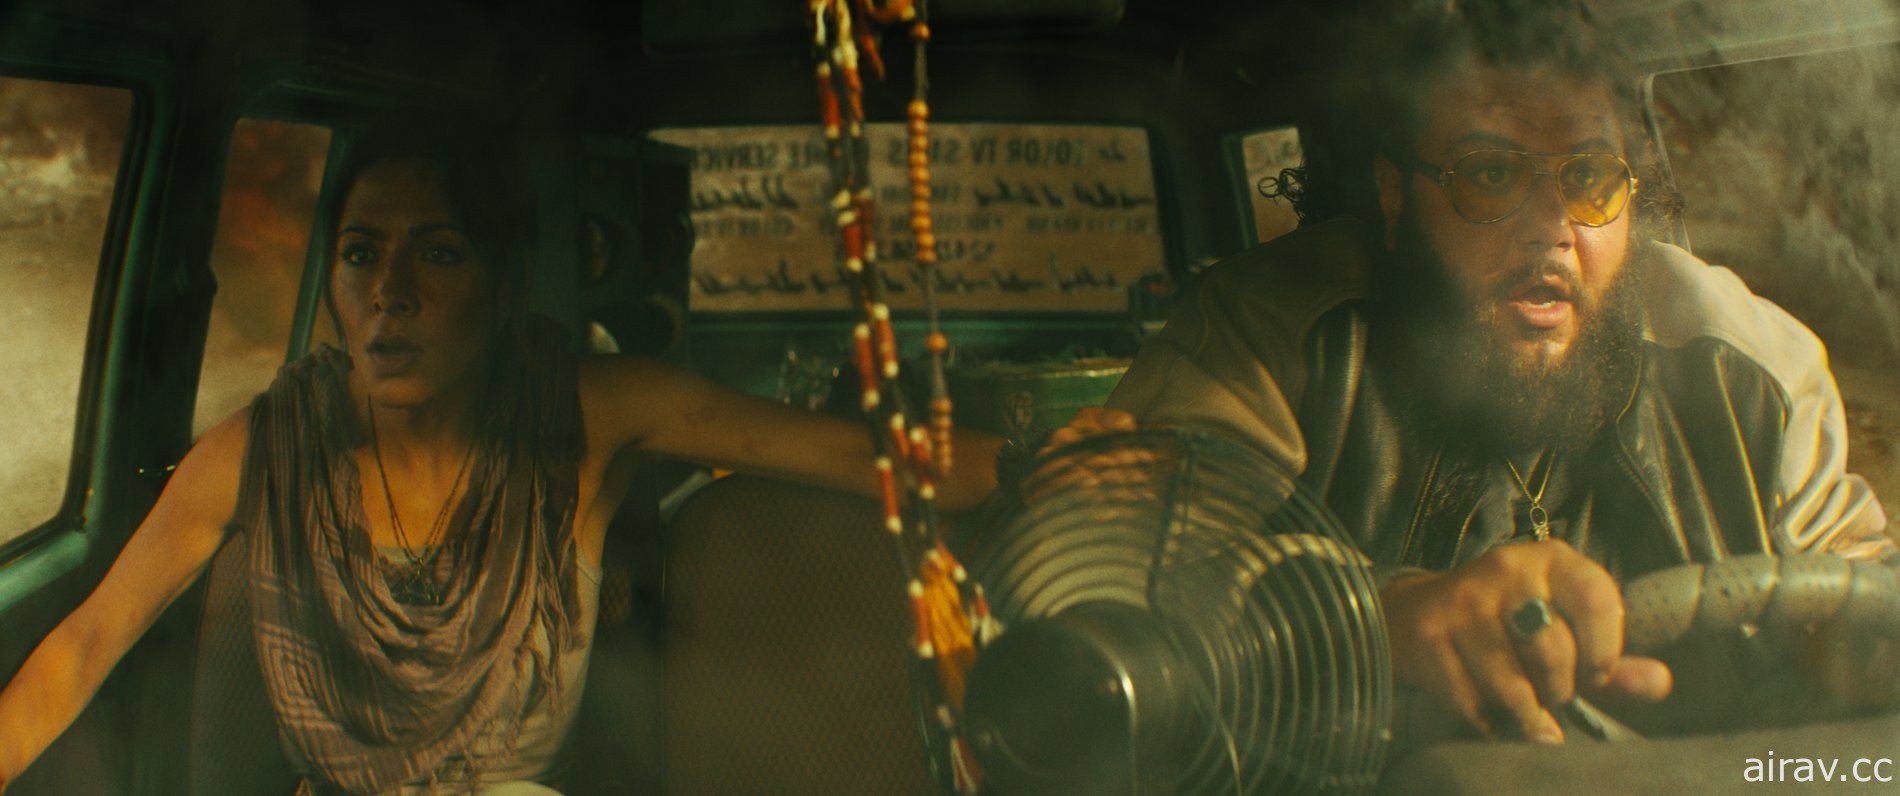 巨石強森主演《黑亞當》釋出正式預告影片 今年 10 月在台上映